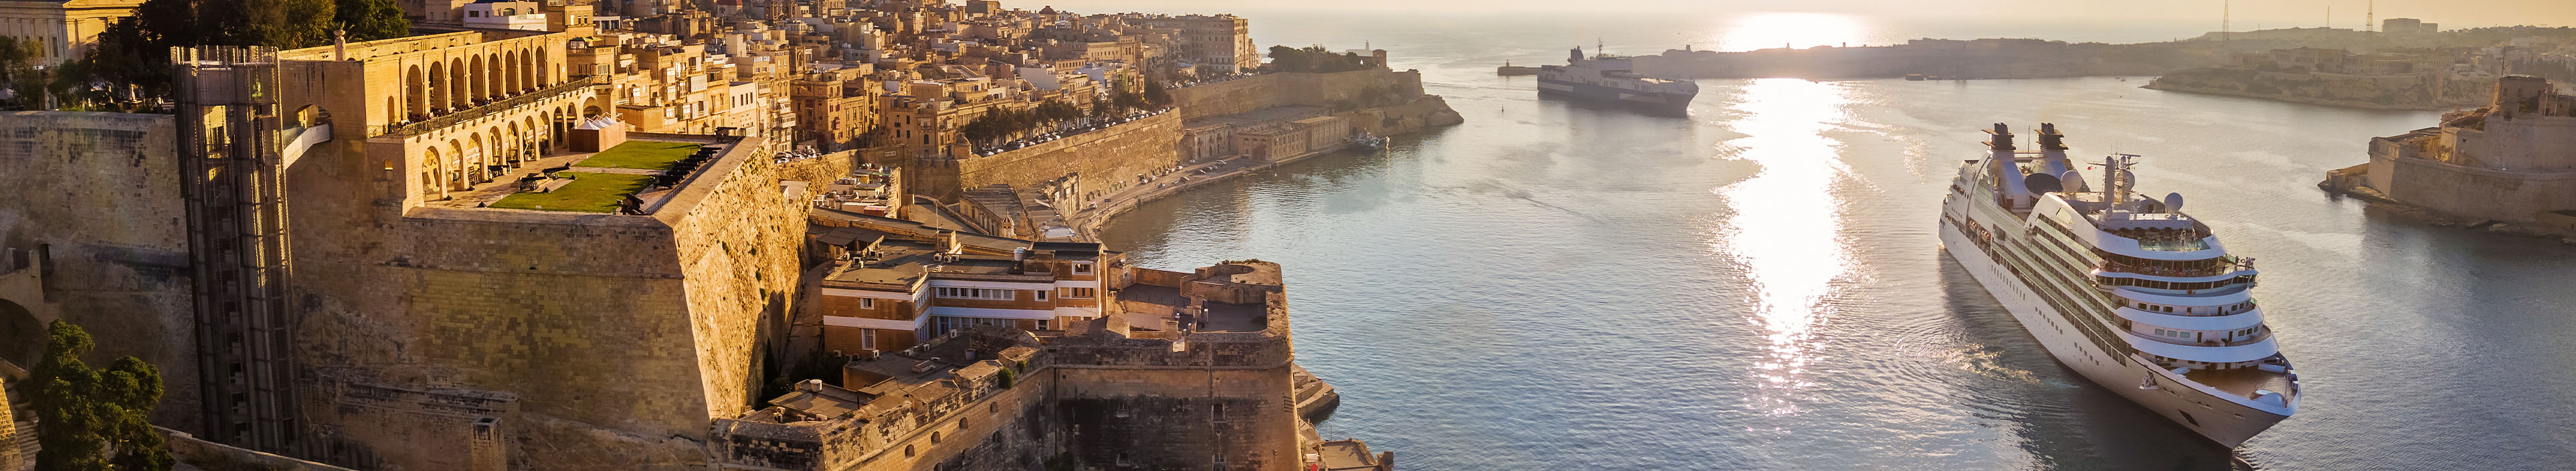 Zwei Kreuzfahrtschiffe fahren bei Sonnenaufgang in den Hafen bei Valletta, Malta.